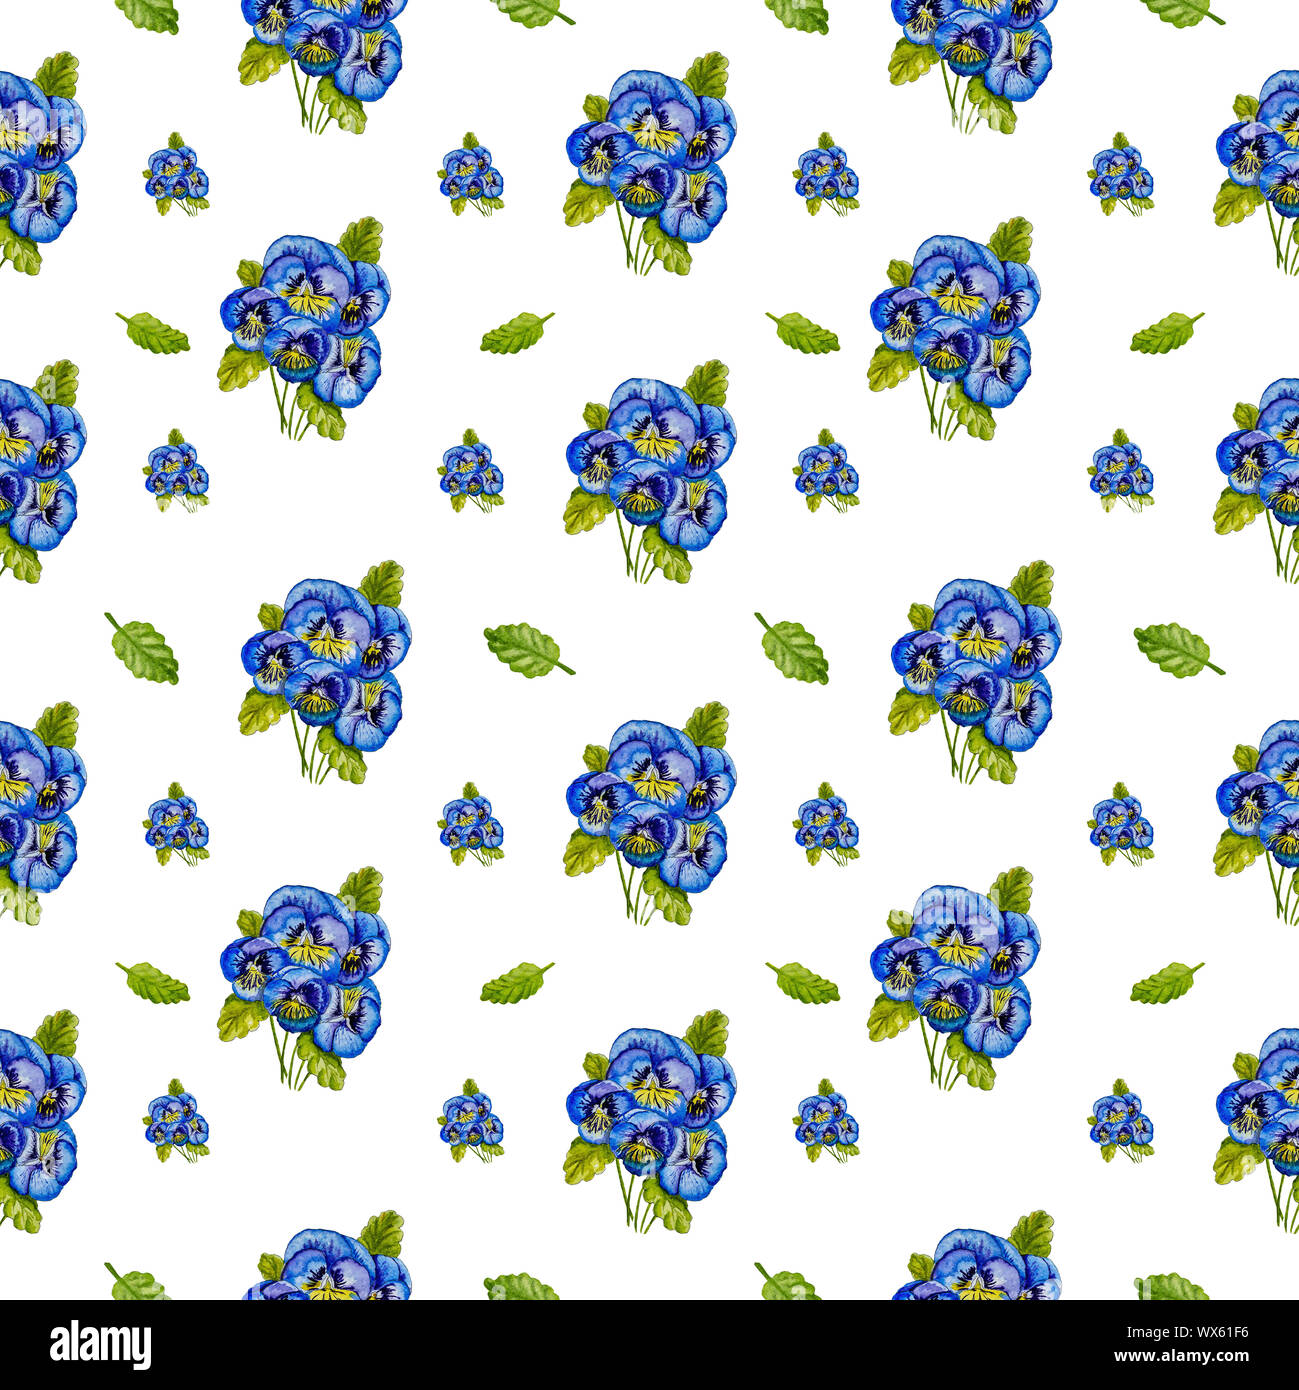 Blumensträuße der blauen Stiefmütterchen und grünen Blättern. Stockfoto